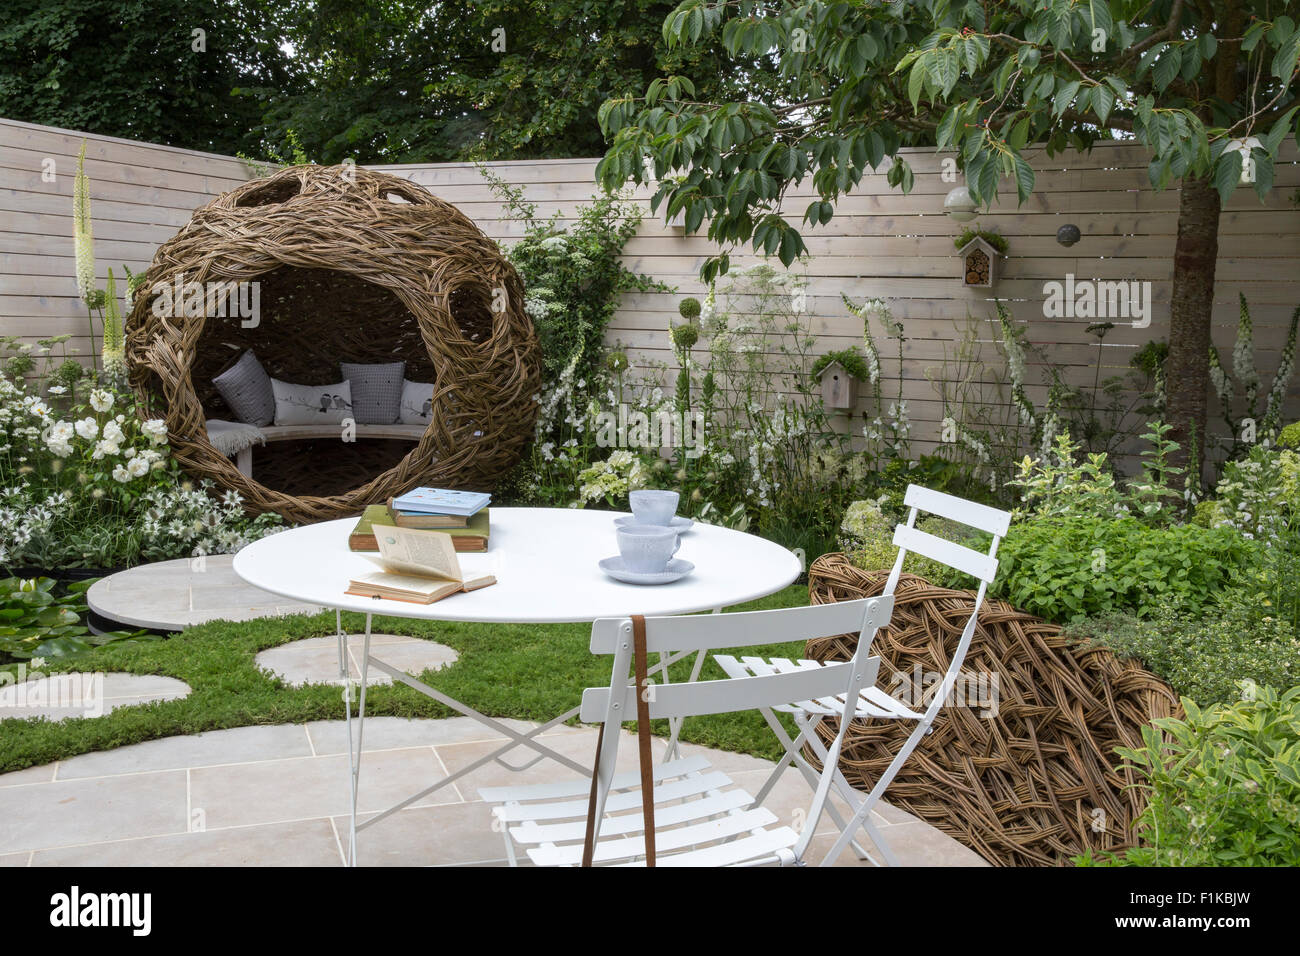 Kleiner Garten Urban rund Stein Kreis Terrasse Tischstühle bemalte Zäune Kamille Rasen Steppsteine weiße Blumen in Grenzen UK Stockfoto